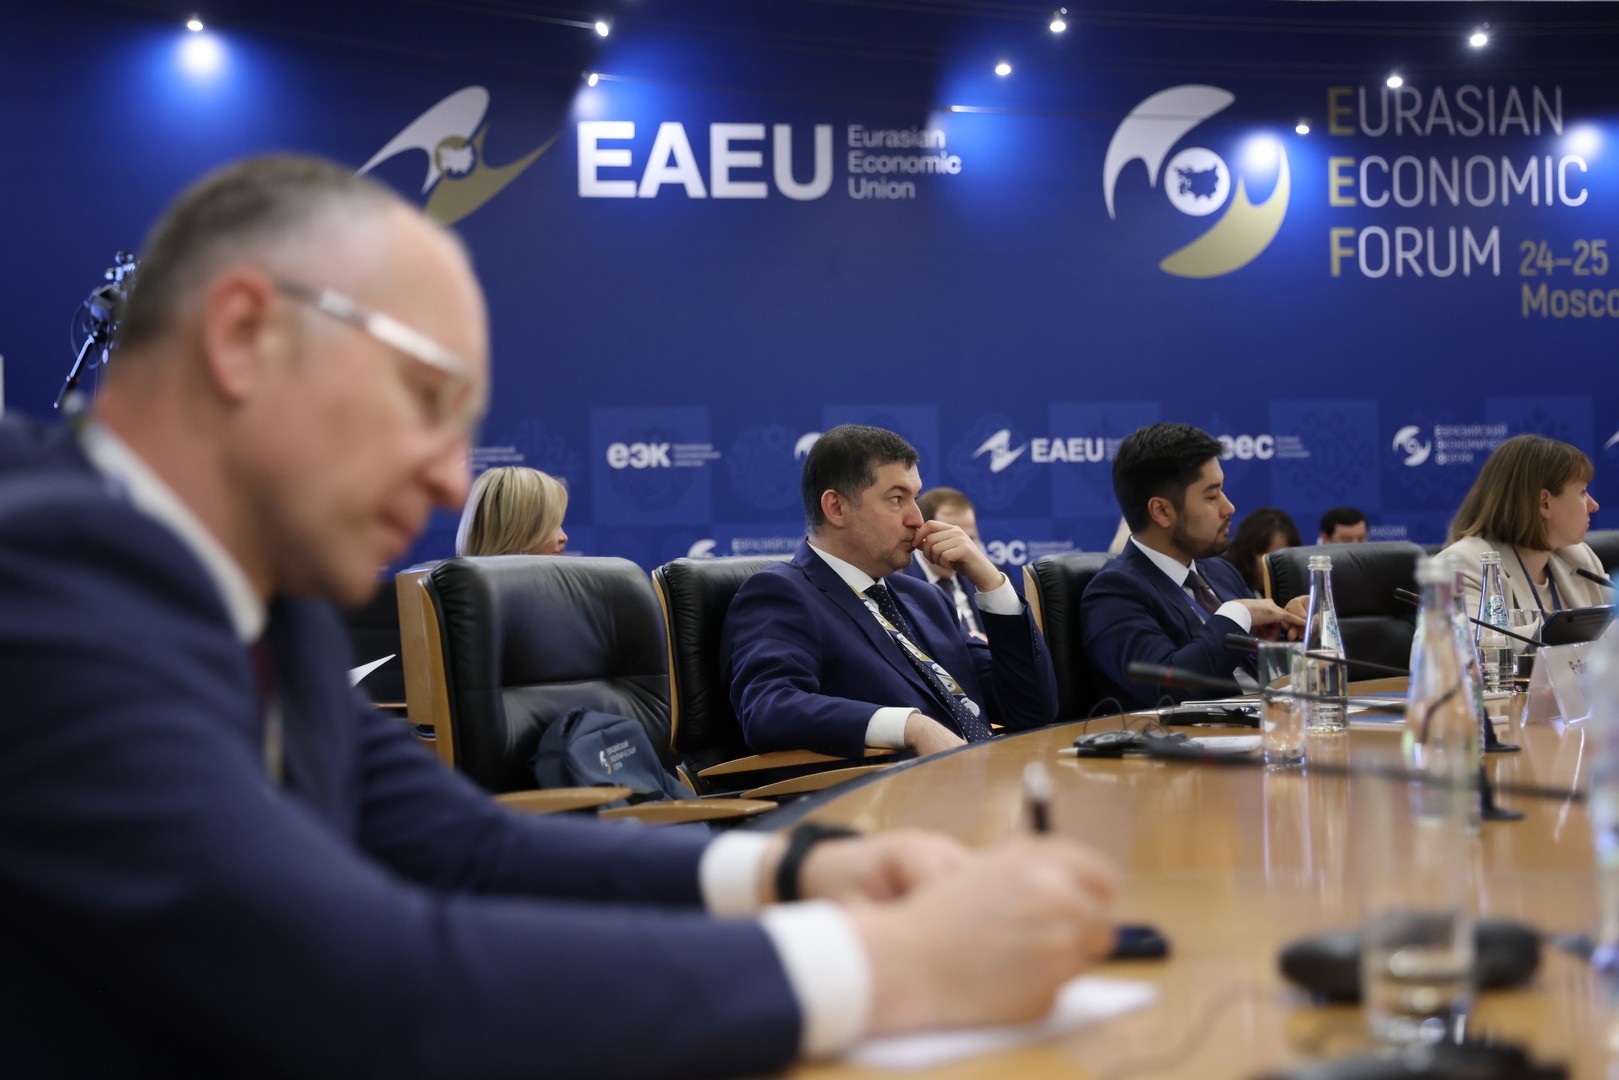 С 24-26 мая 2023 года в Москве прошел Второй Евразийский Экономический Форум, с участием стран-партнеров ЕАЭС